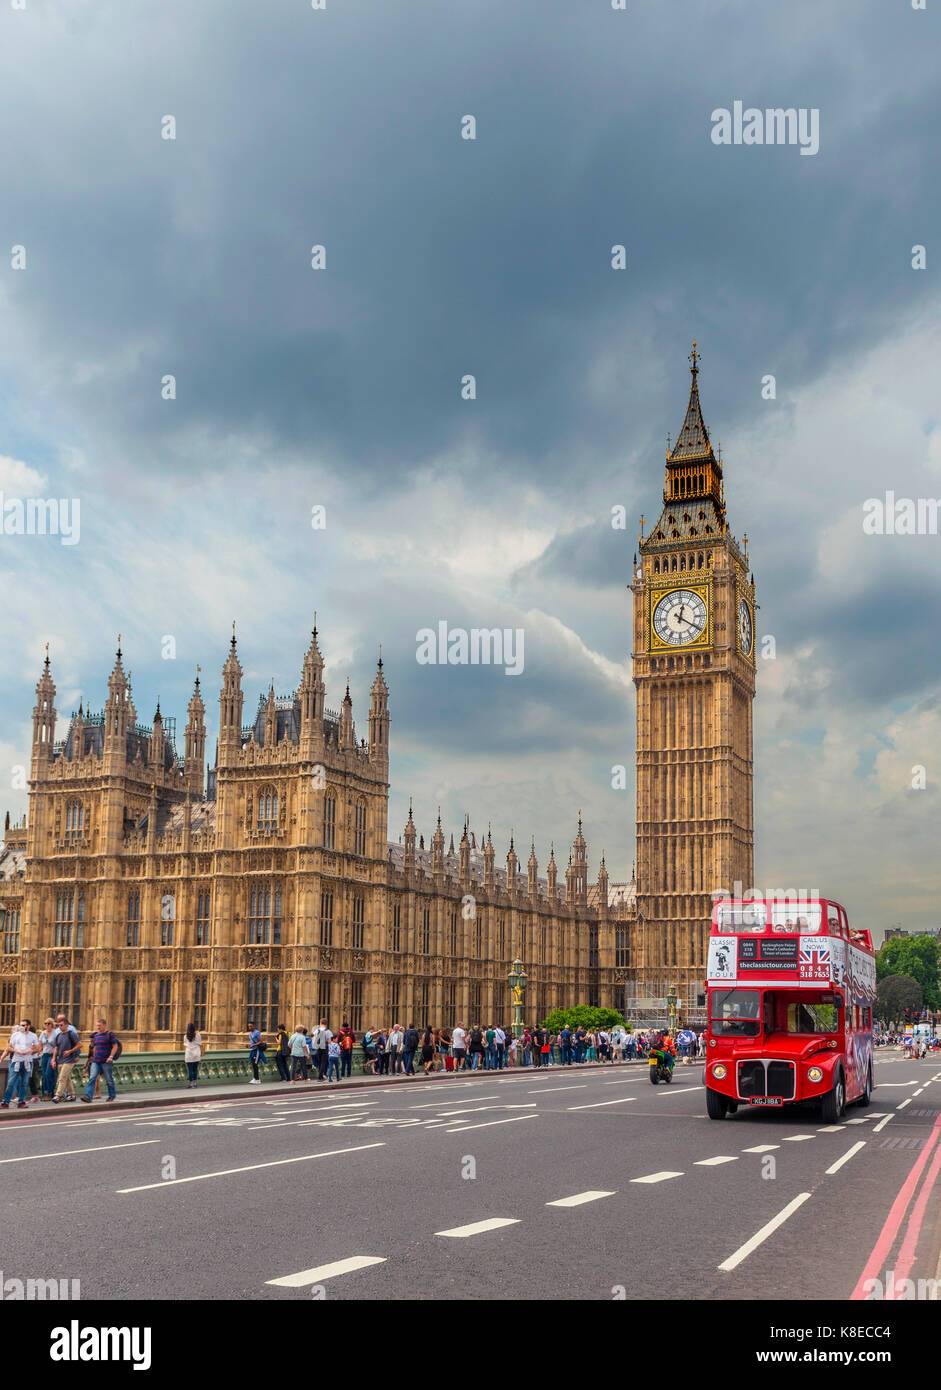 Autobús de dos pisos, el puente de Westminster, el palacio de Westminster, casas del parlamento, el Big Ben, la ciudad de Westminster, Londres Foto de stock